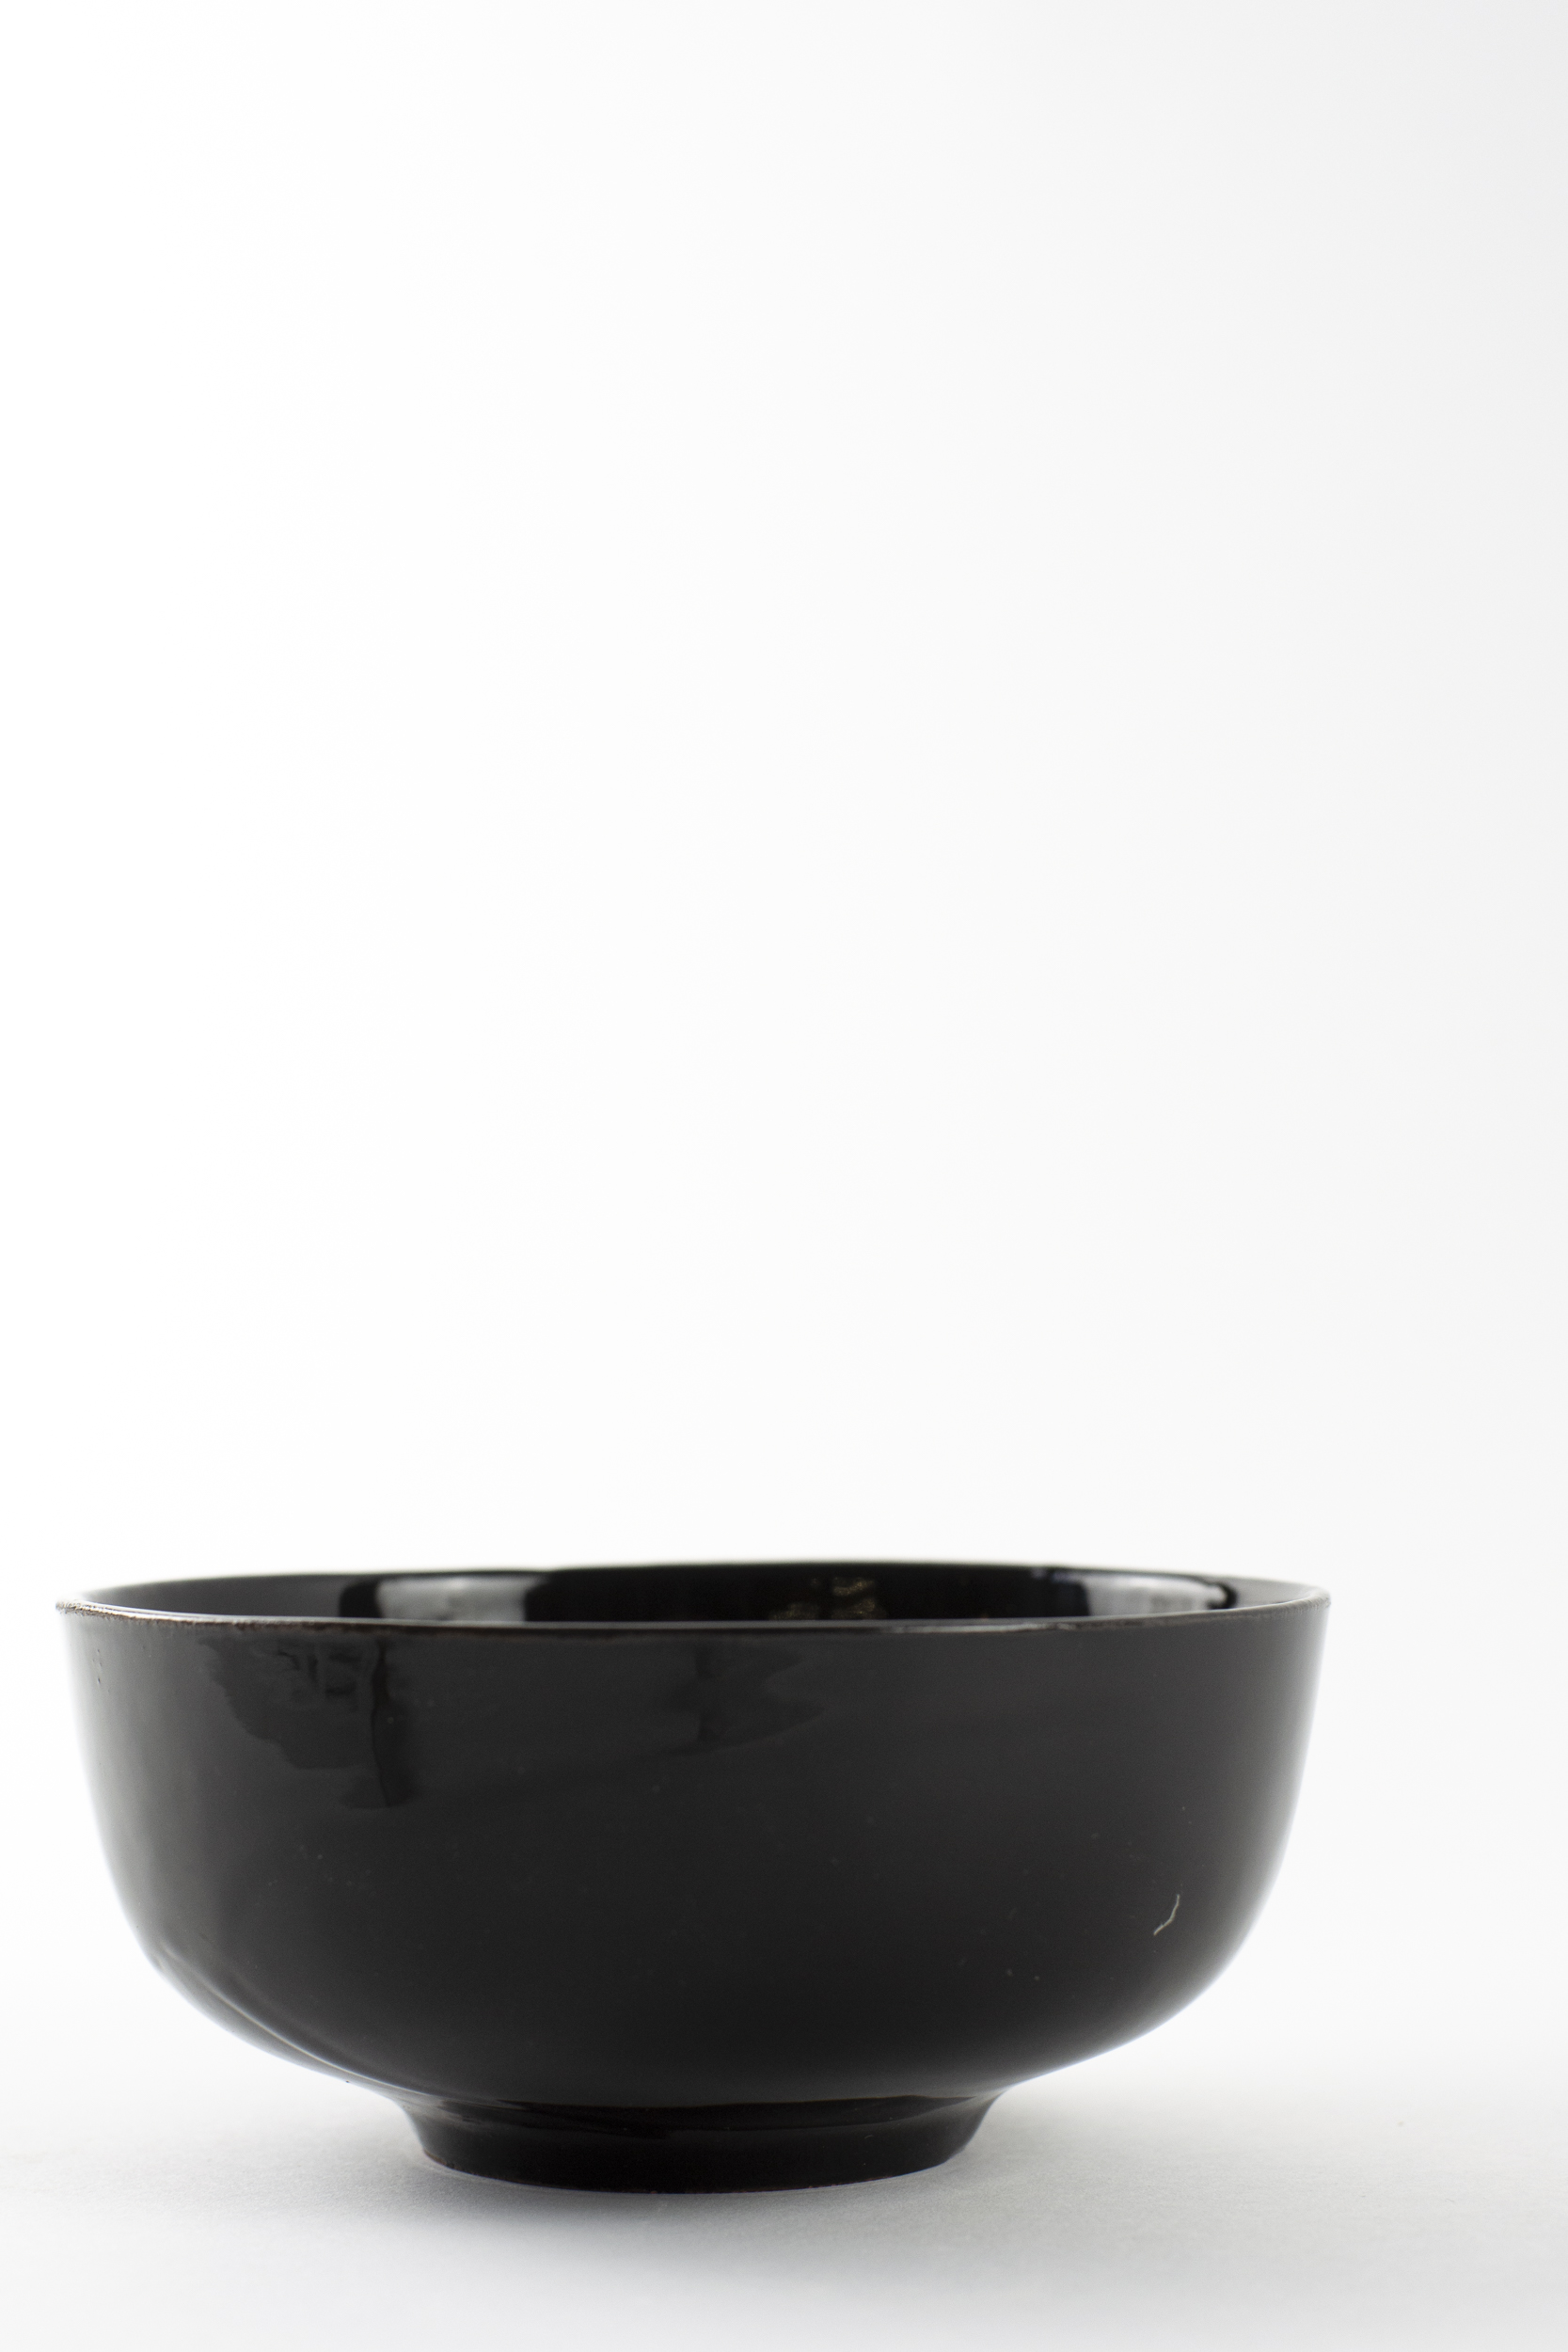 Luxury designer ceramic ramen bowl